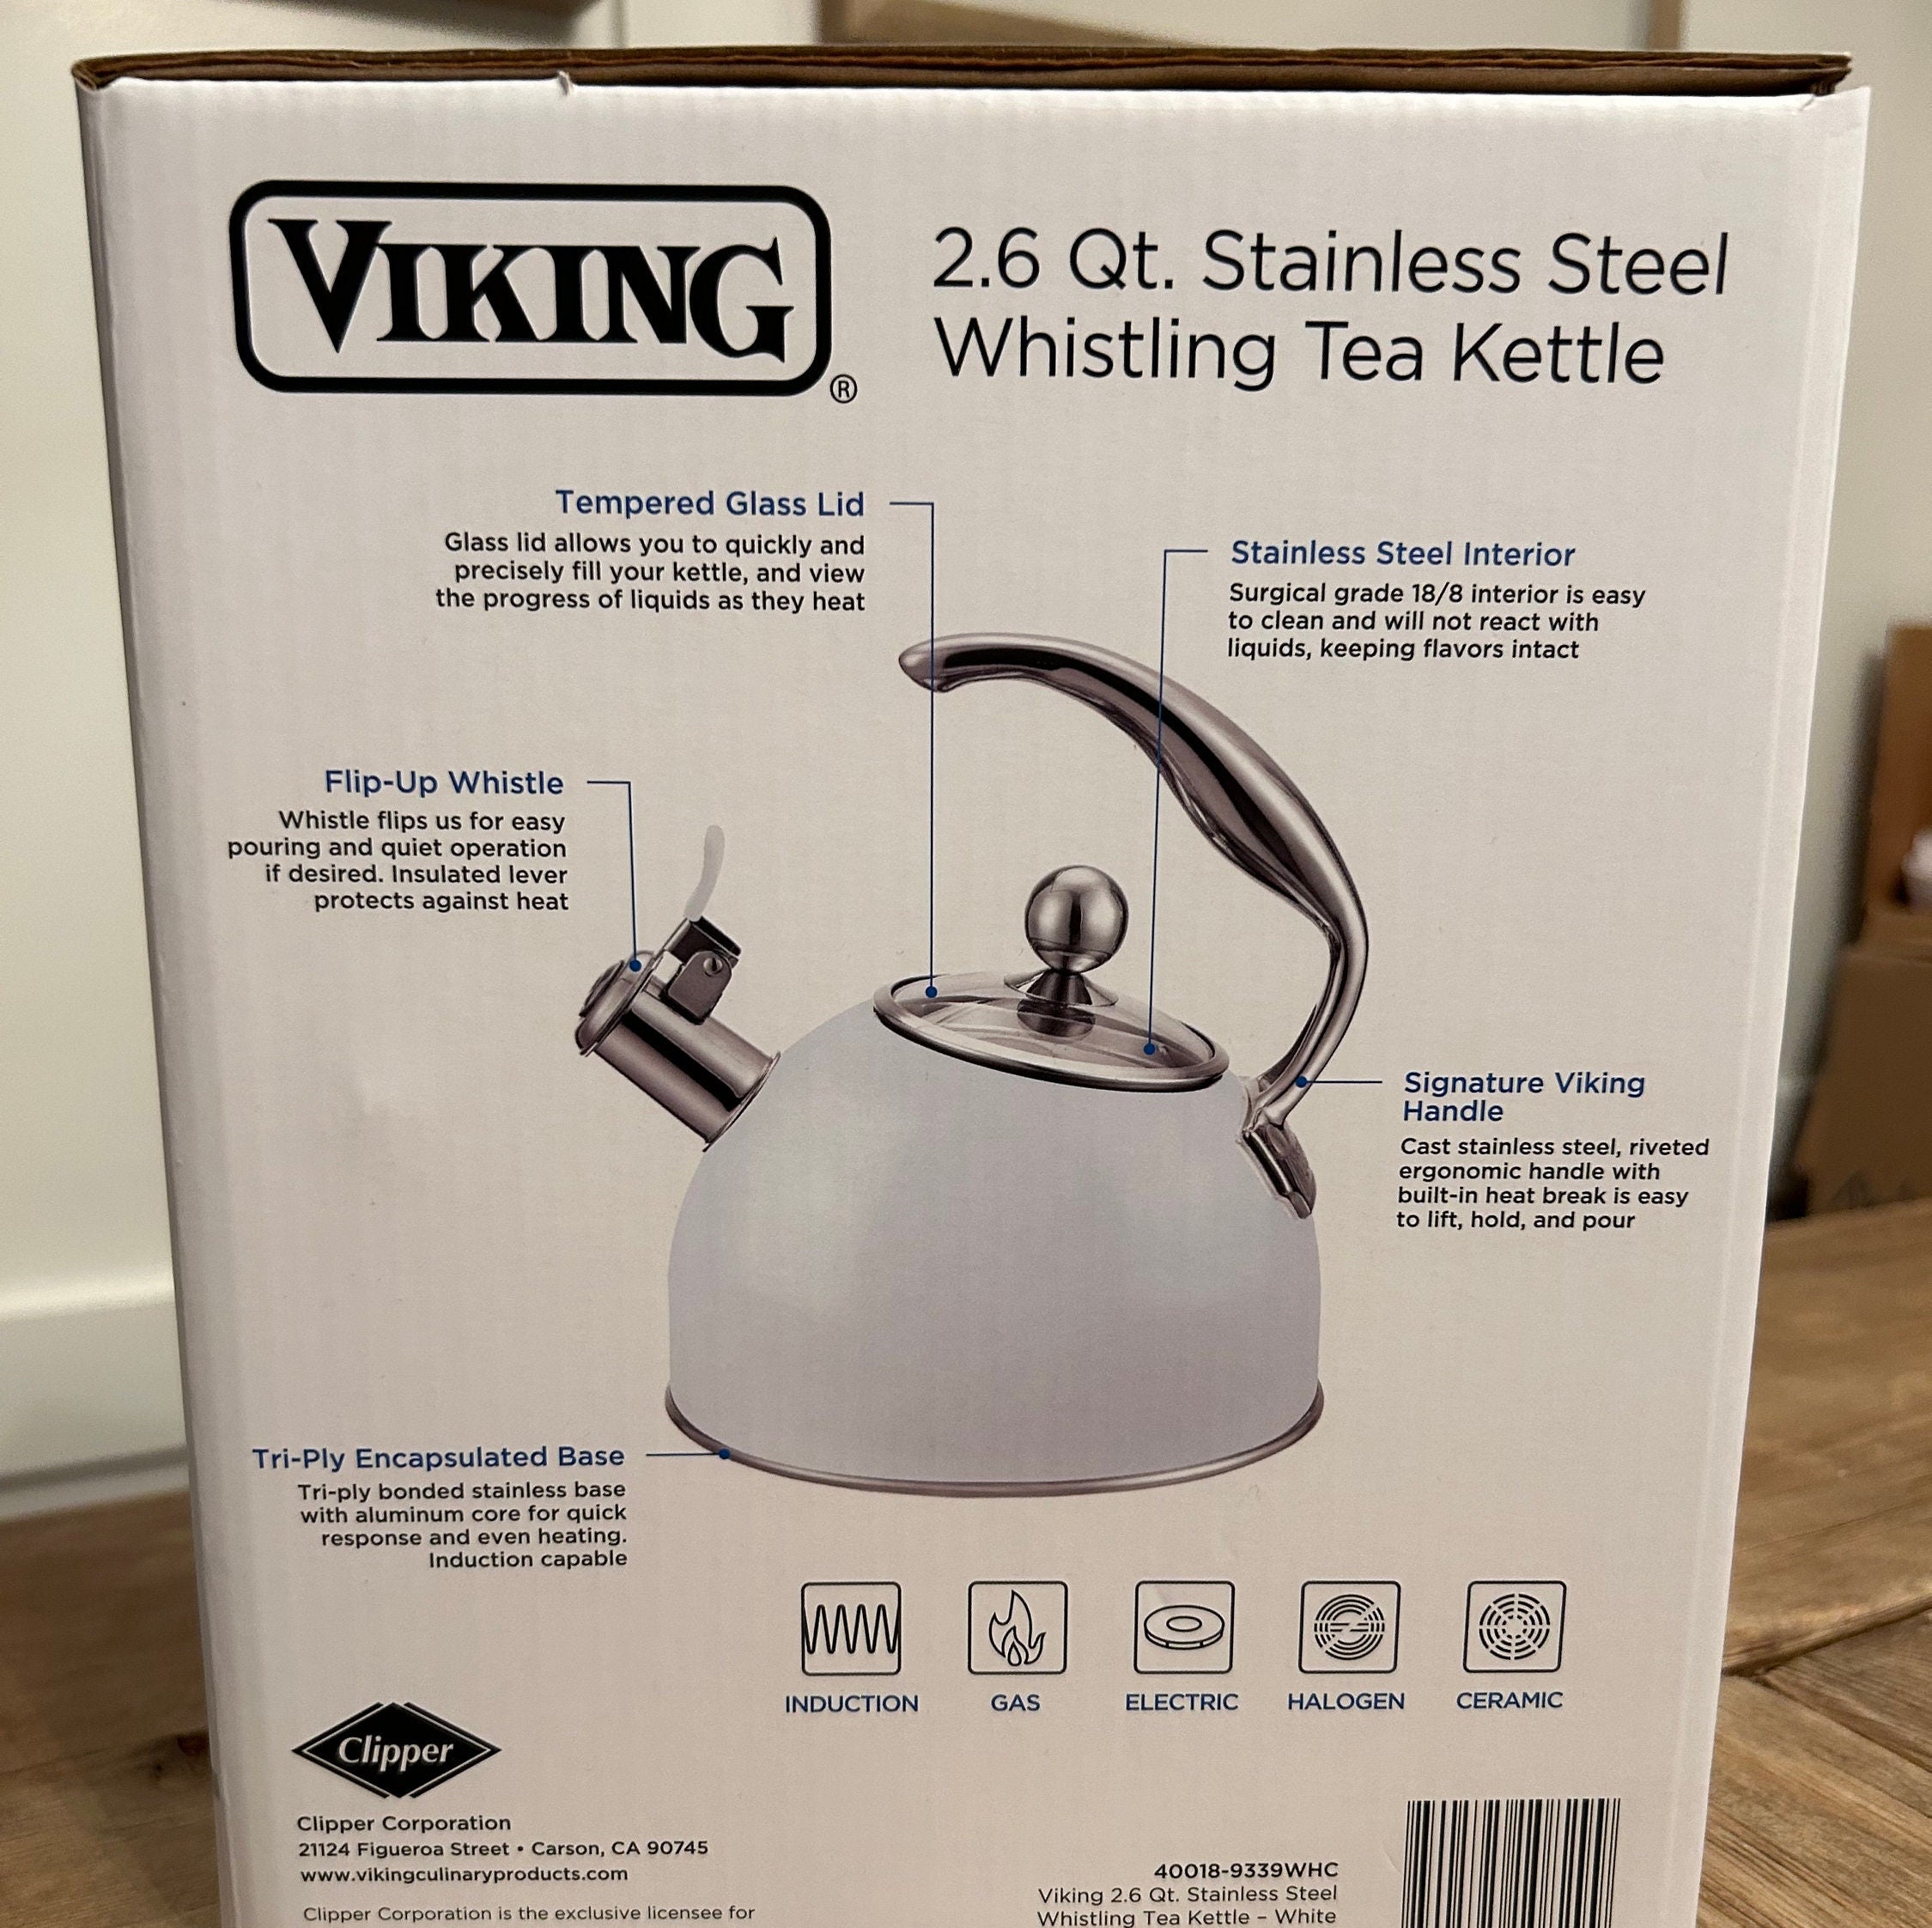 Viking Stainless Steel 2.6 Quart Whistling Tea Kettles - The